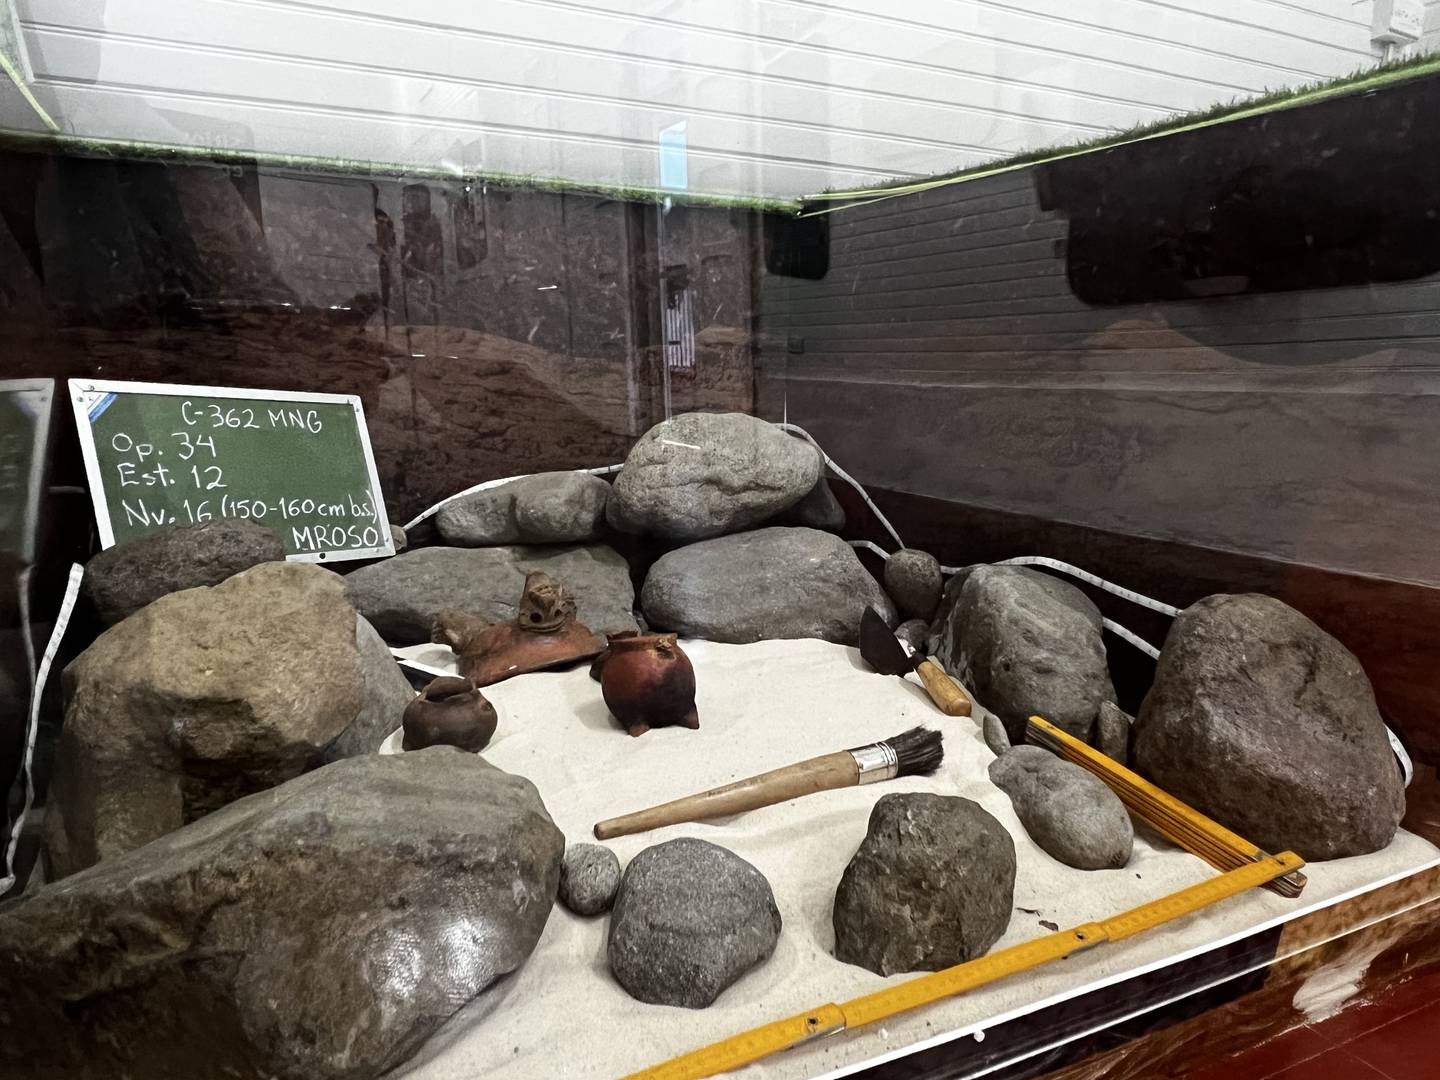 La exposición cuenta con obras que se extrajeron décadas atrás de los sitios arqueológicos en Turrialba.

Fotografía: Museo Nacional